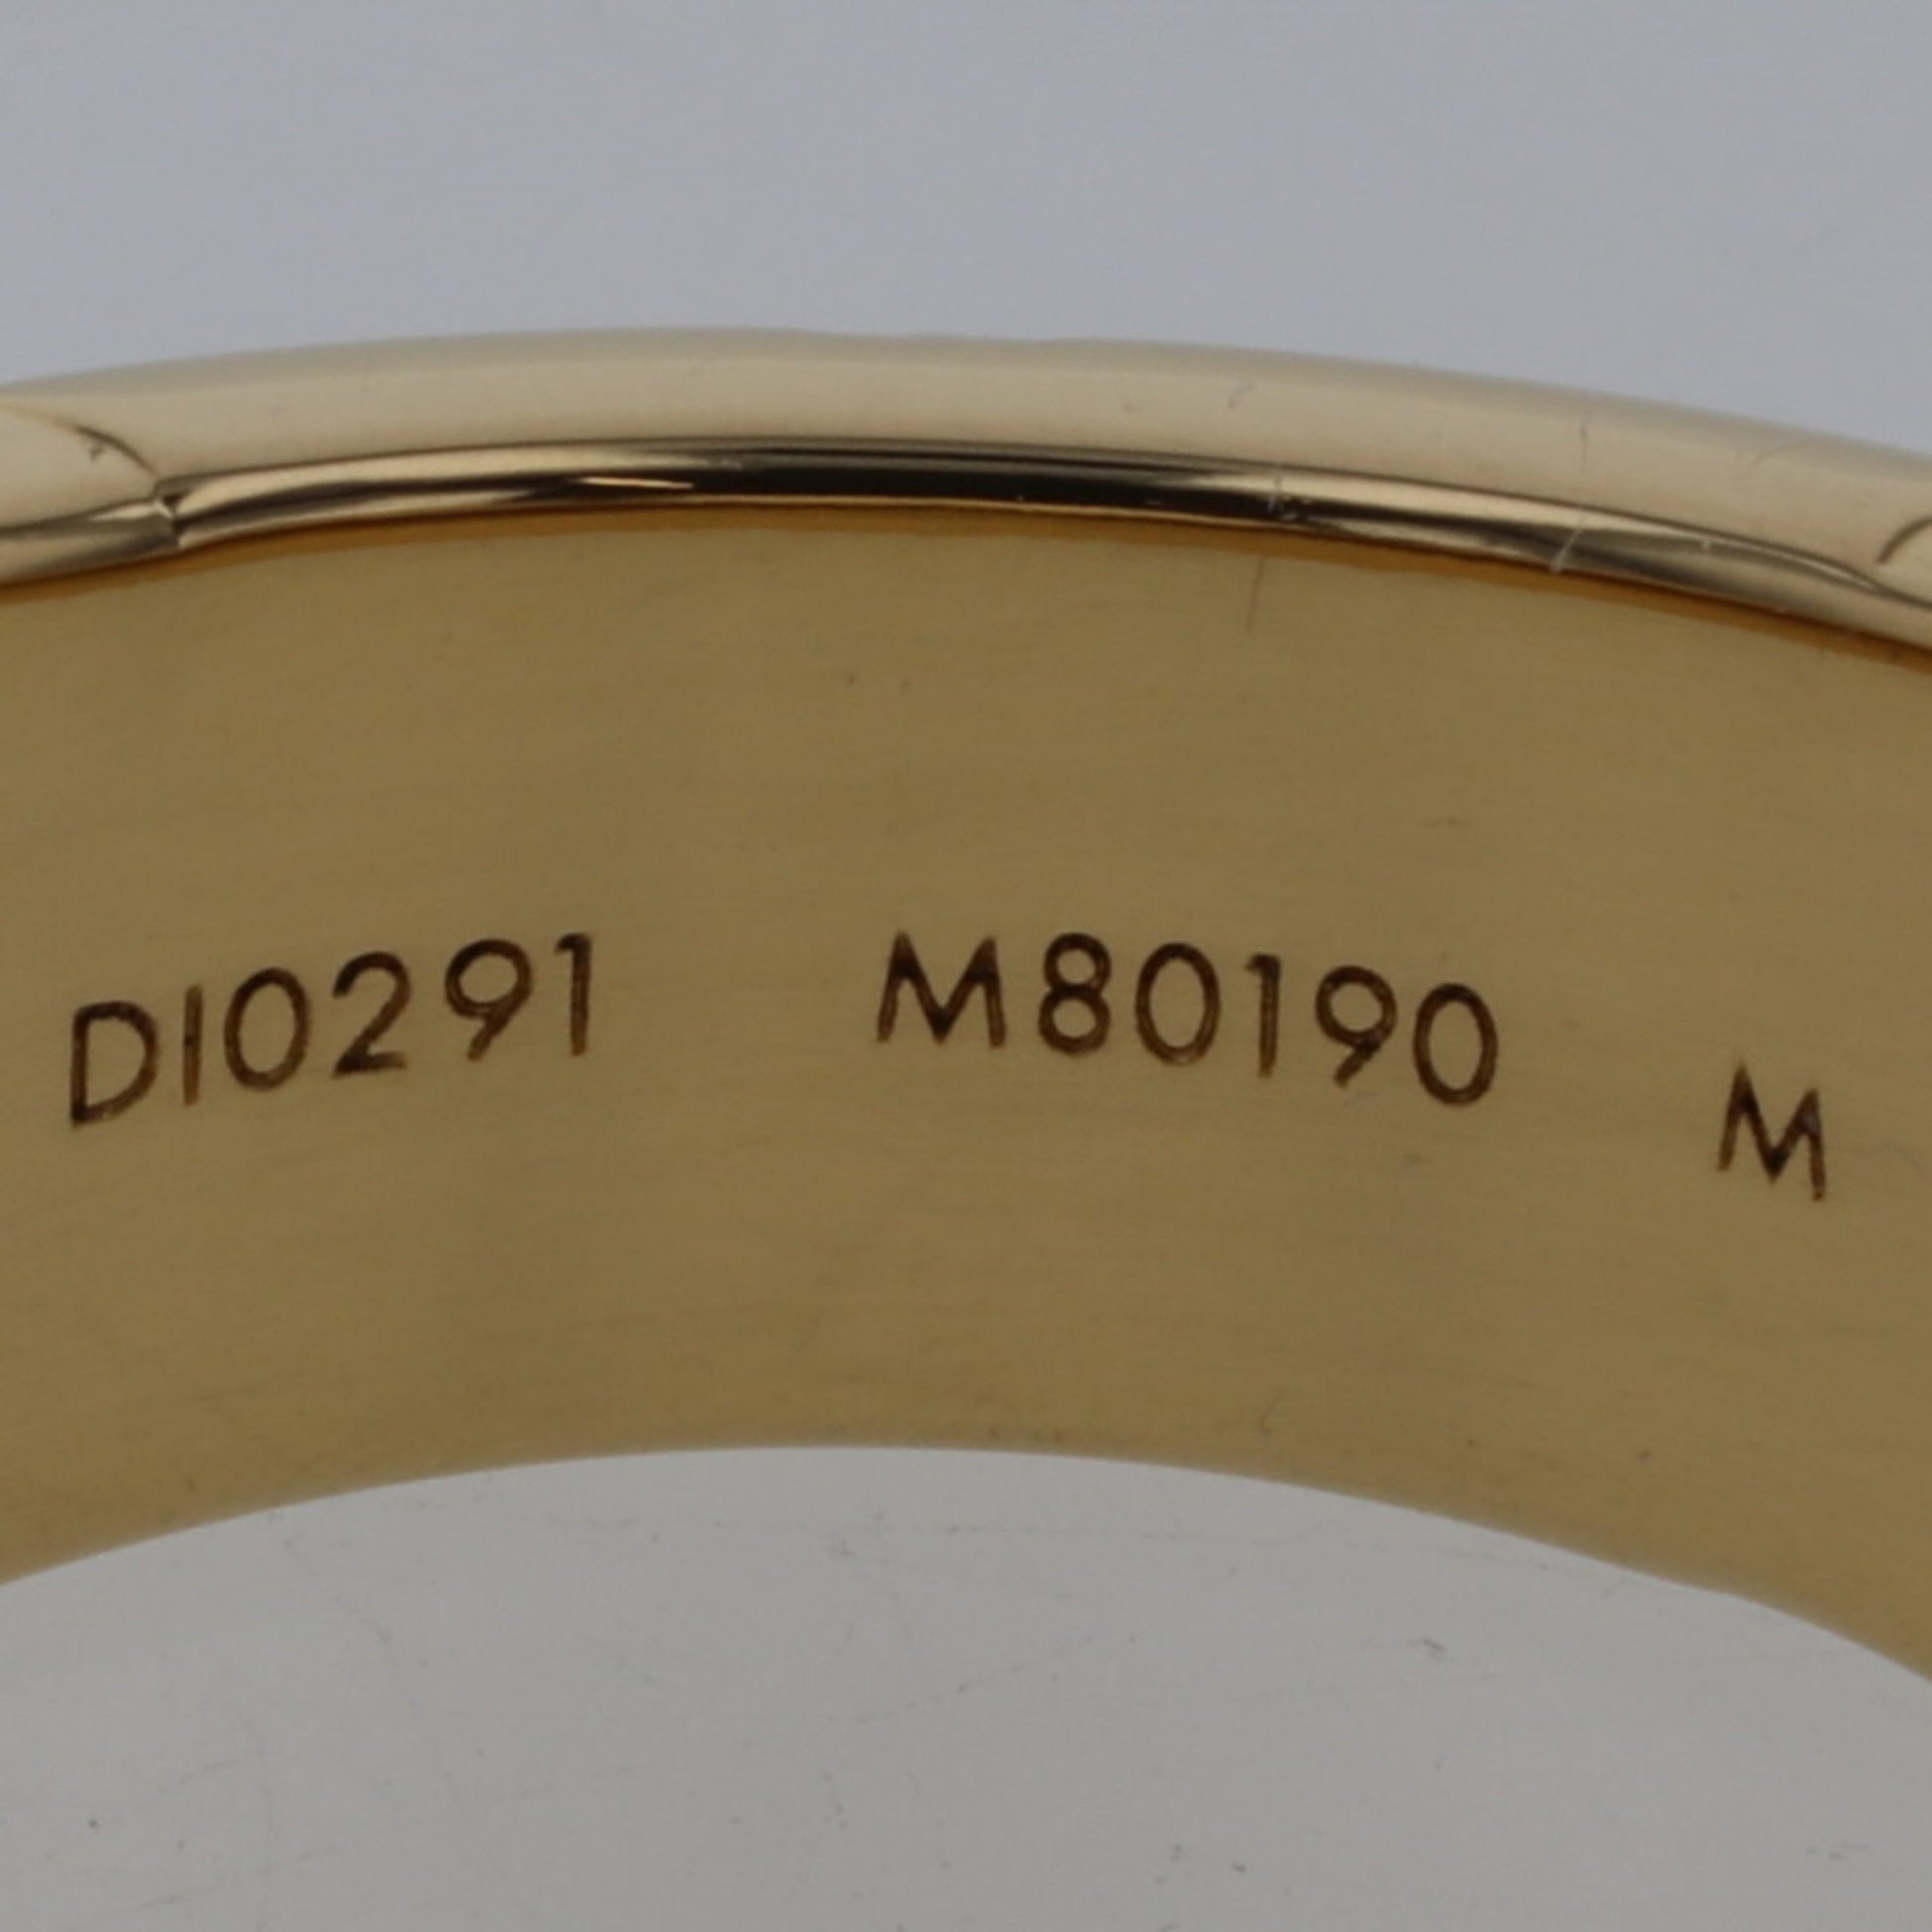 Louis Vuitton Monogram Signet Ring (M80190)